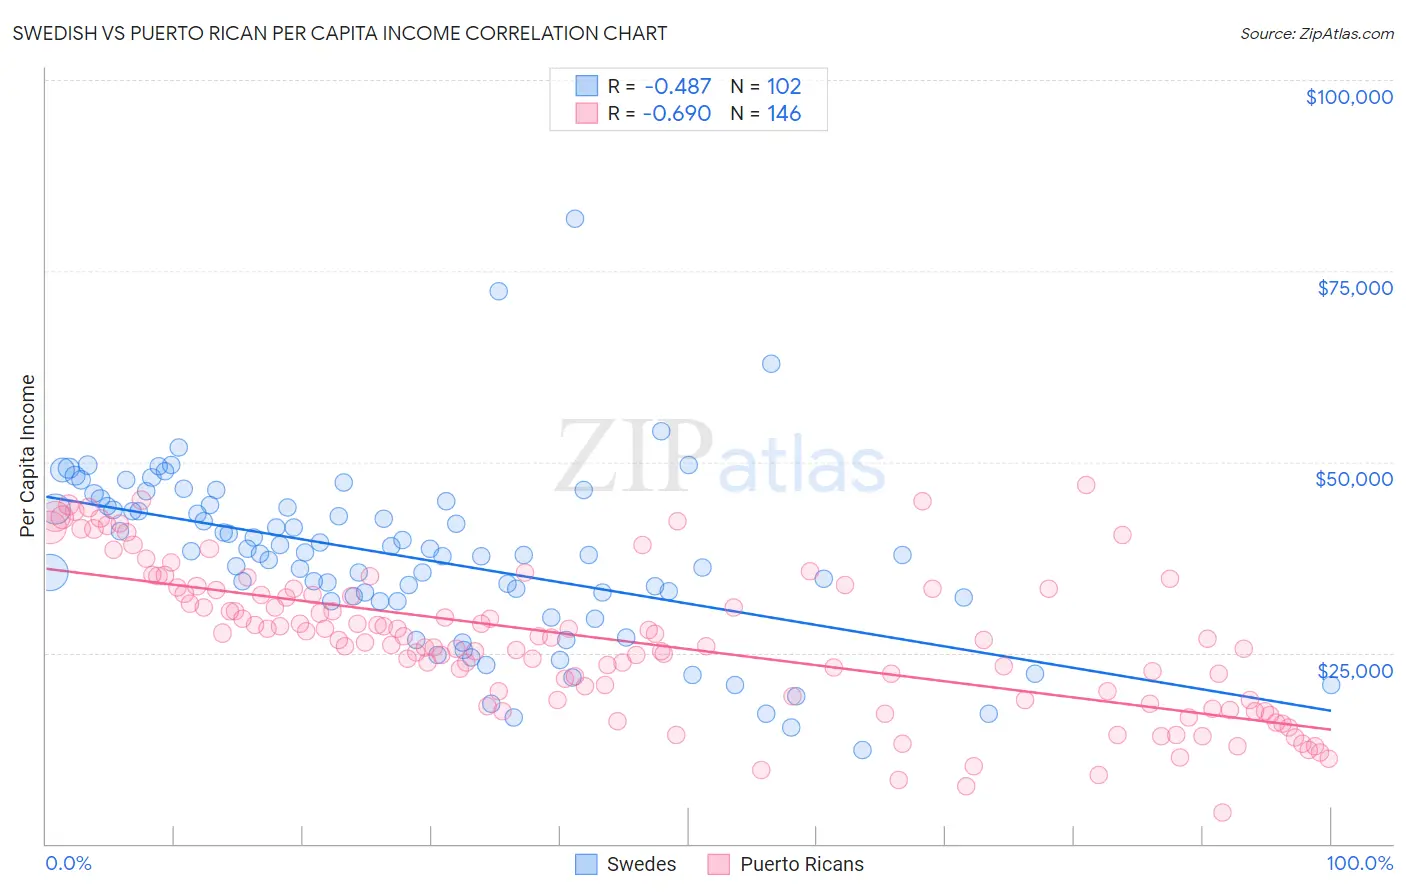 Swedish vs Puerto Rican Per Capita Income